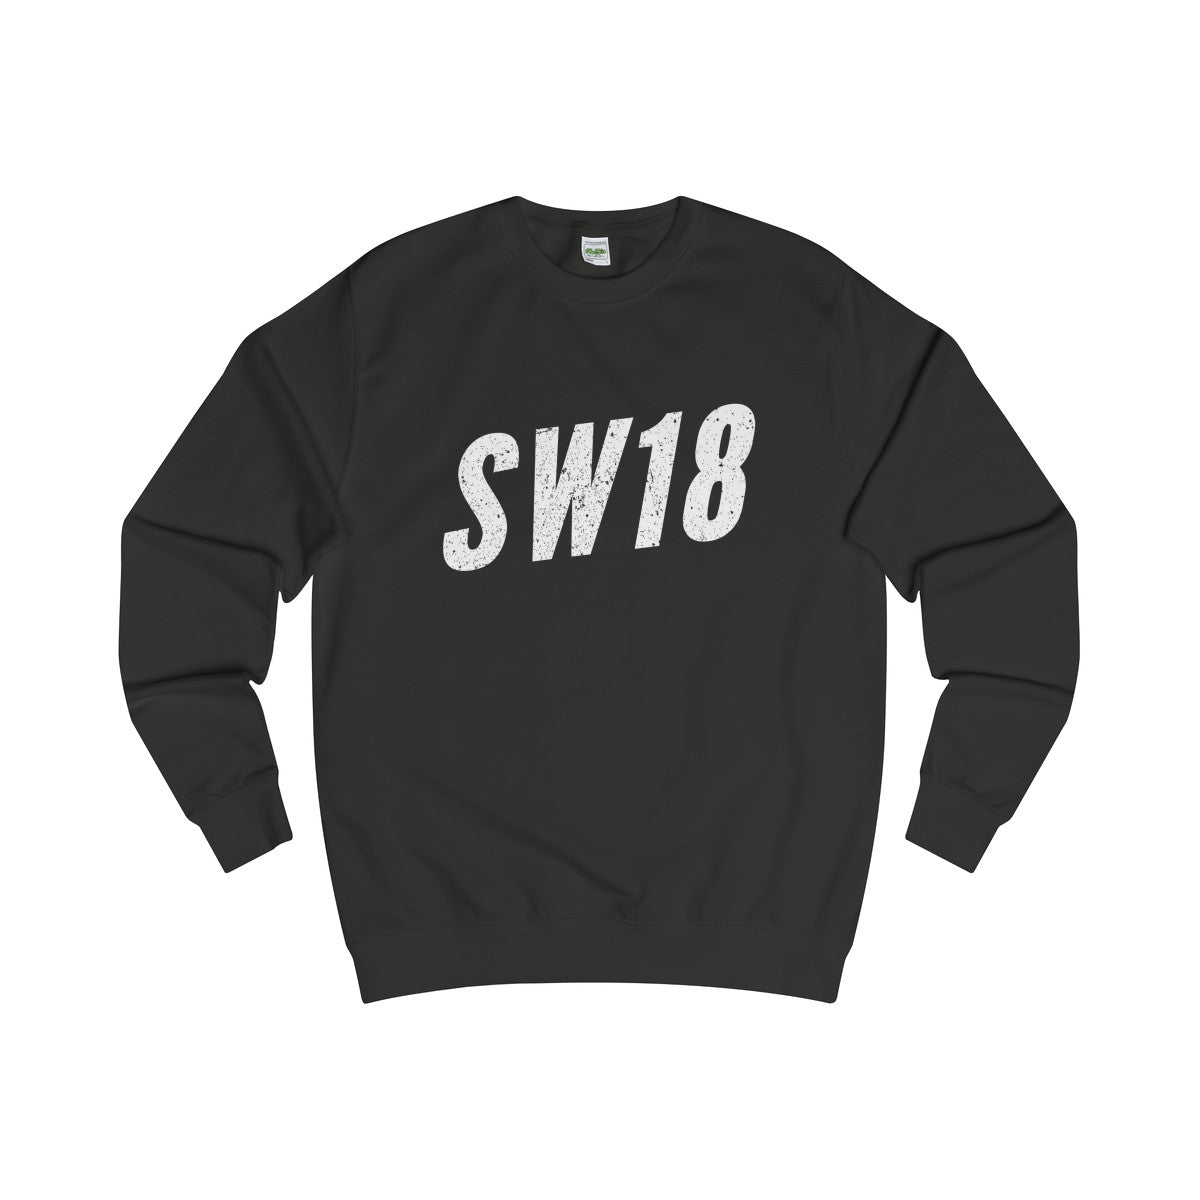 Earlsfield SW18 Sweater